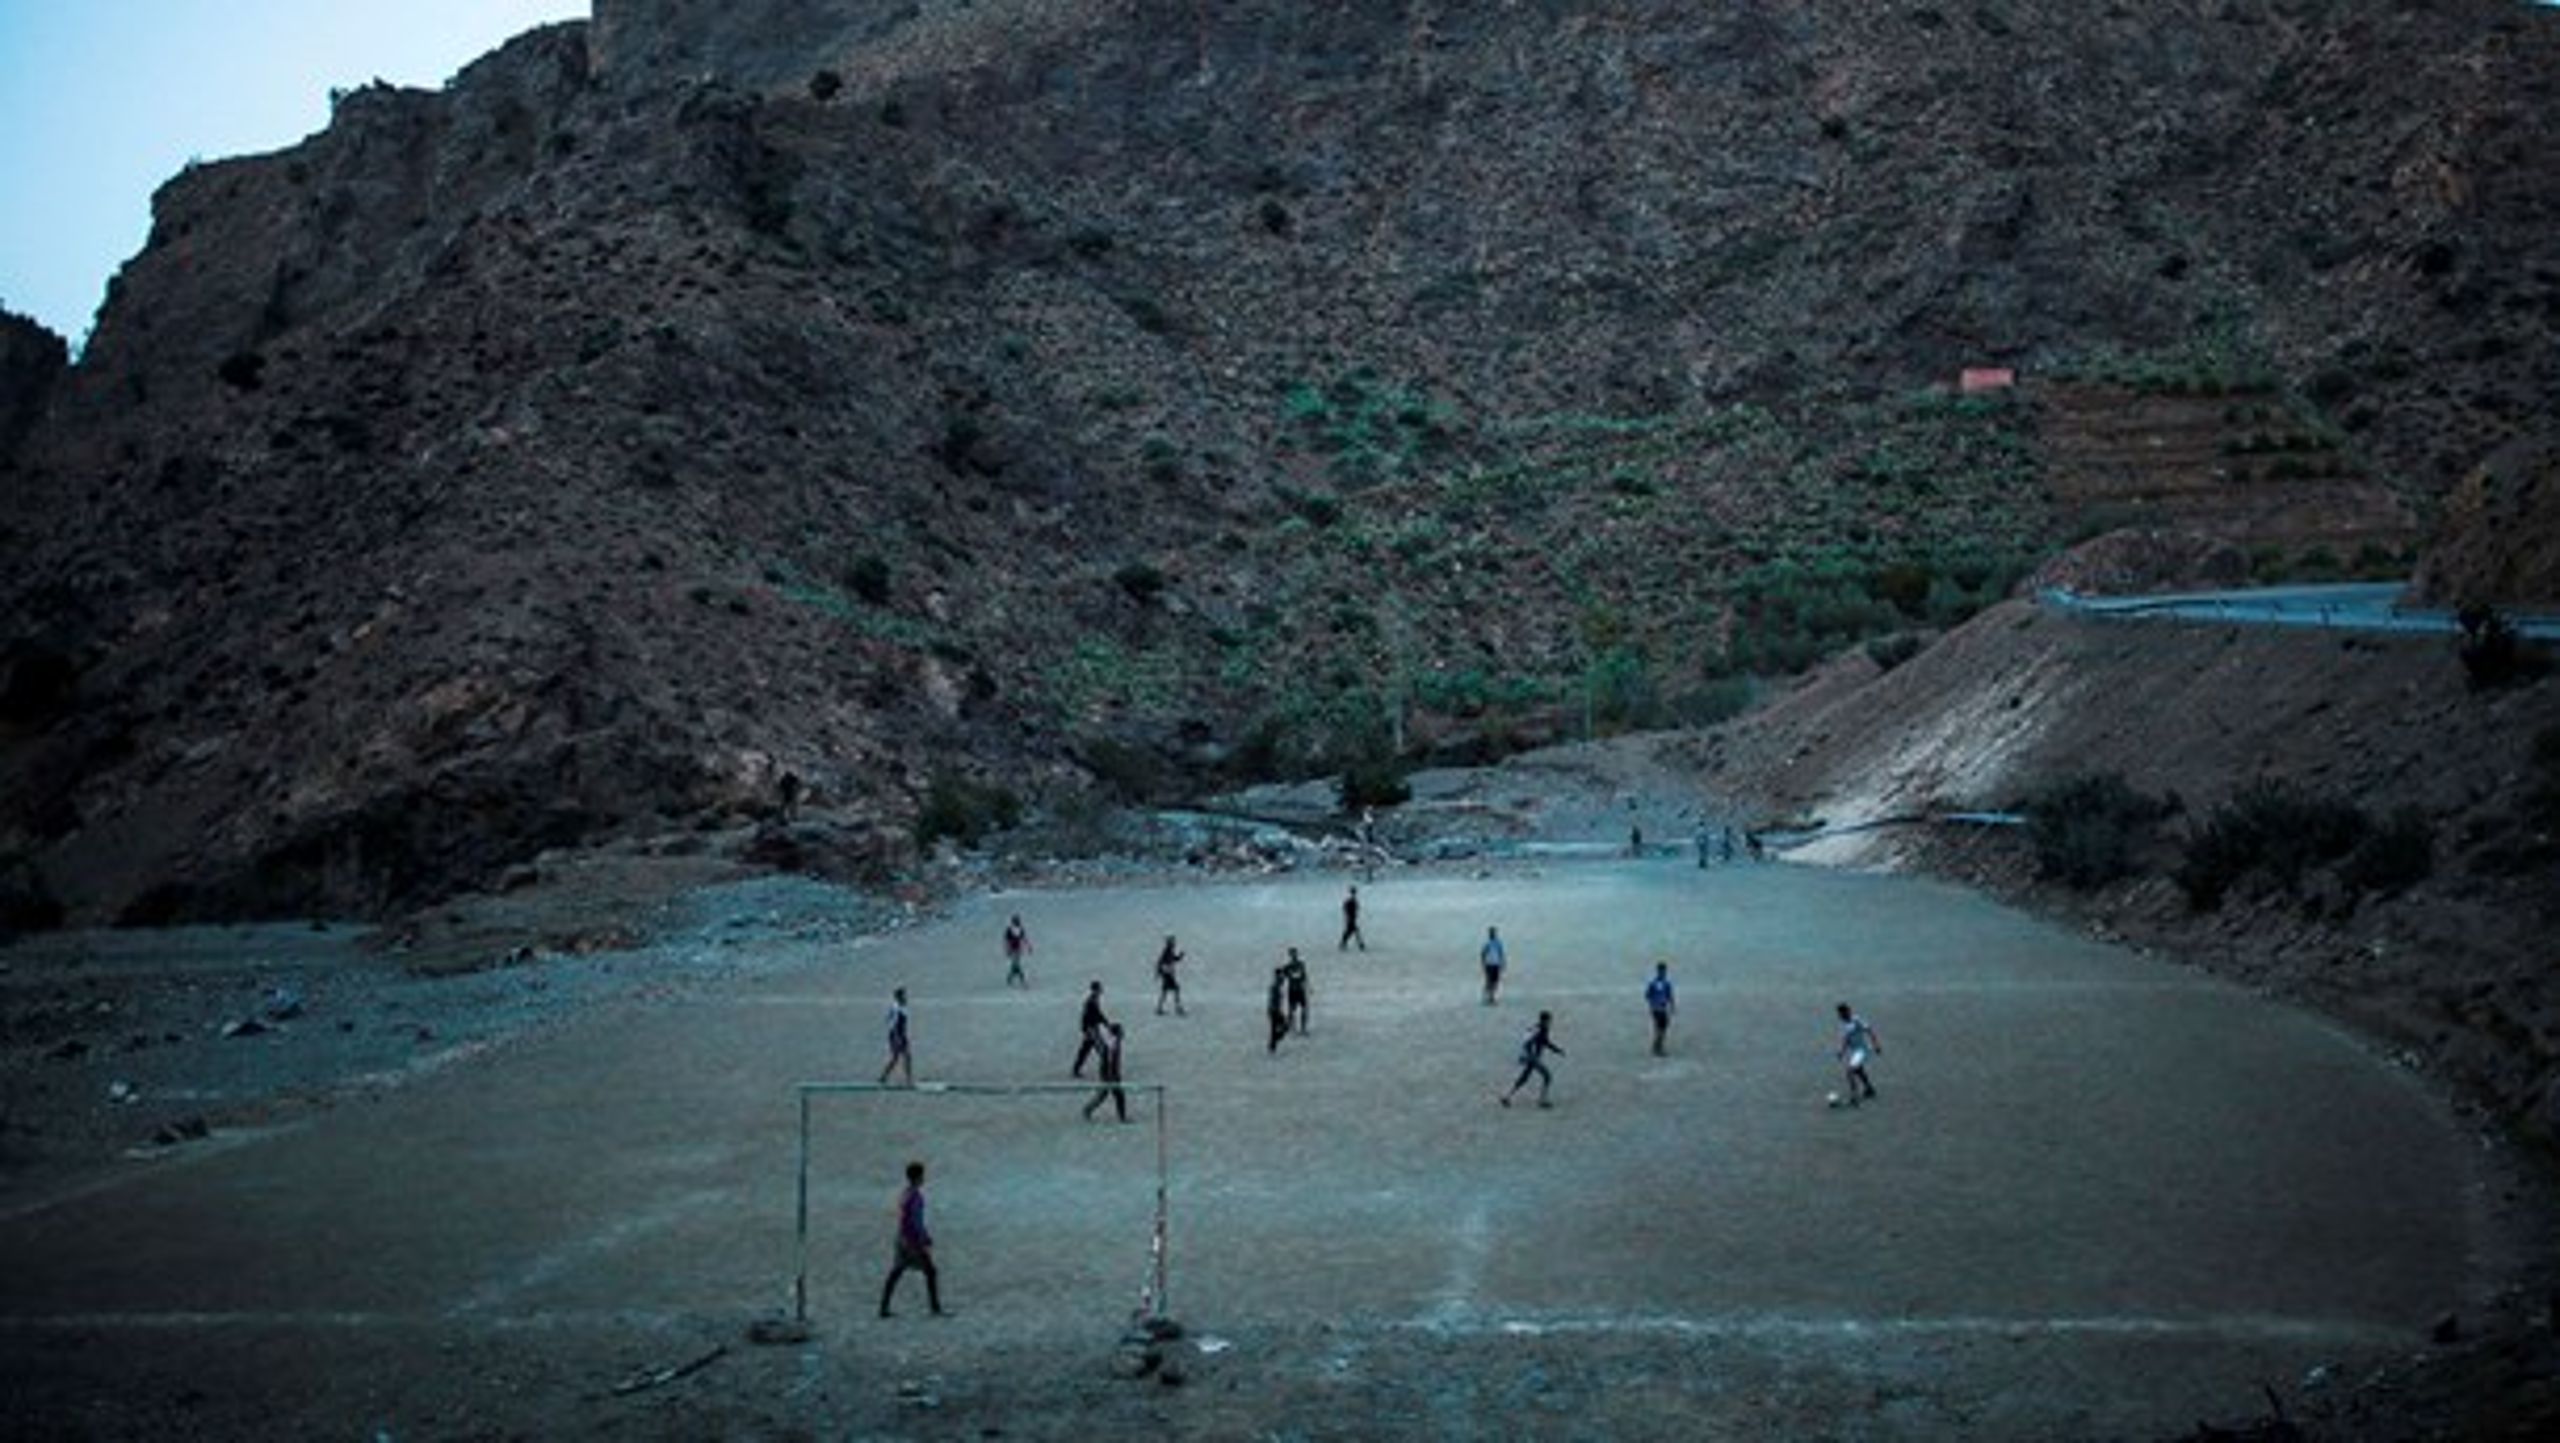 En gruppe unge drenge spiller fodbold i skyggen af et bjerg i nærheden af&nbsp;Ouarzazate i Marokko. Sport - og især fodbold - er et glimrende værktøj til skabe engagement i lokalsamfundet og ligestilling, skriver Anders Levinsen.